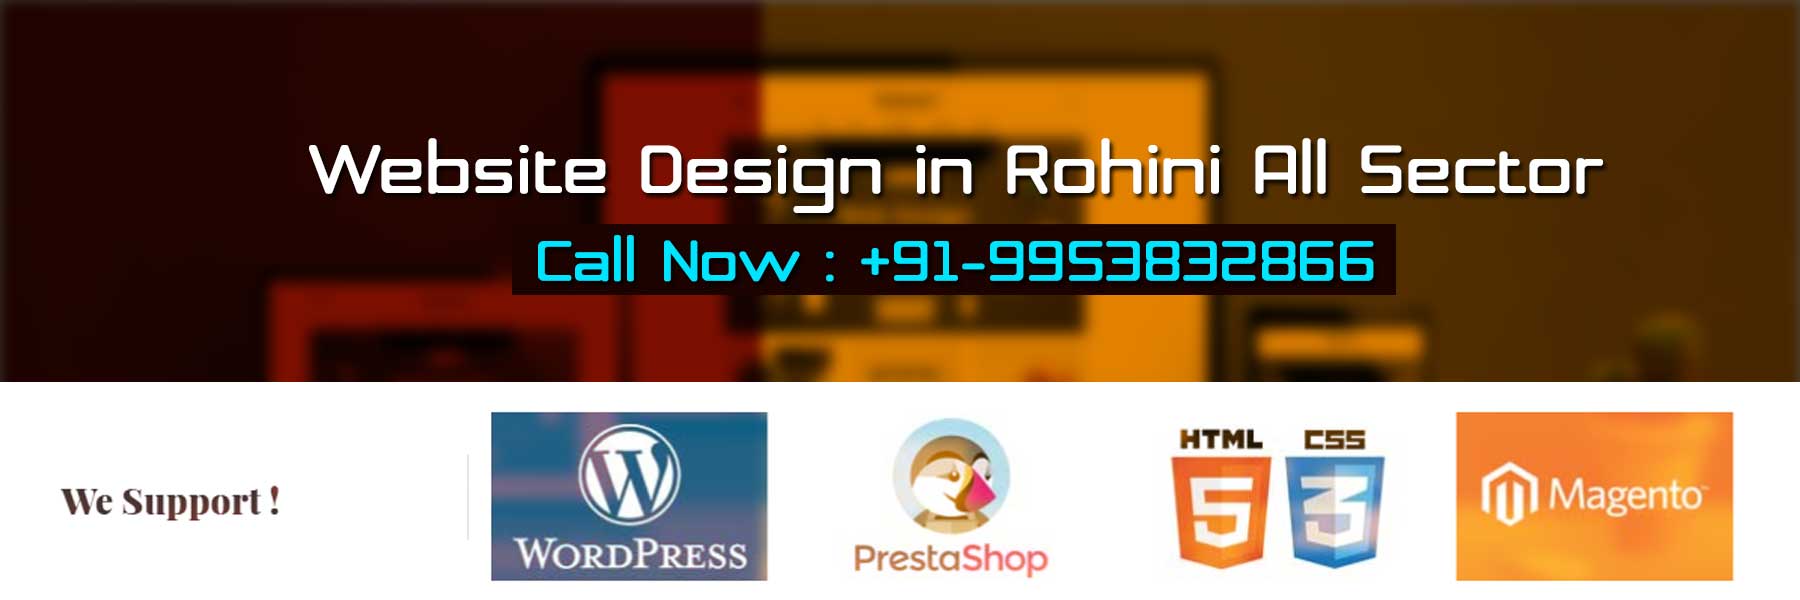 Website Design in Rohini All Sector